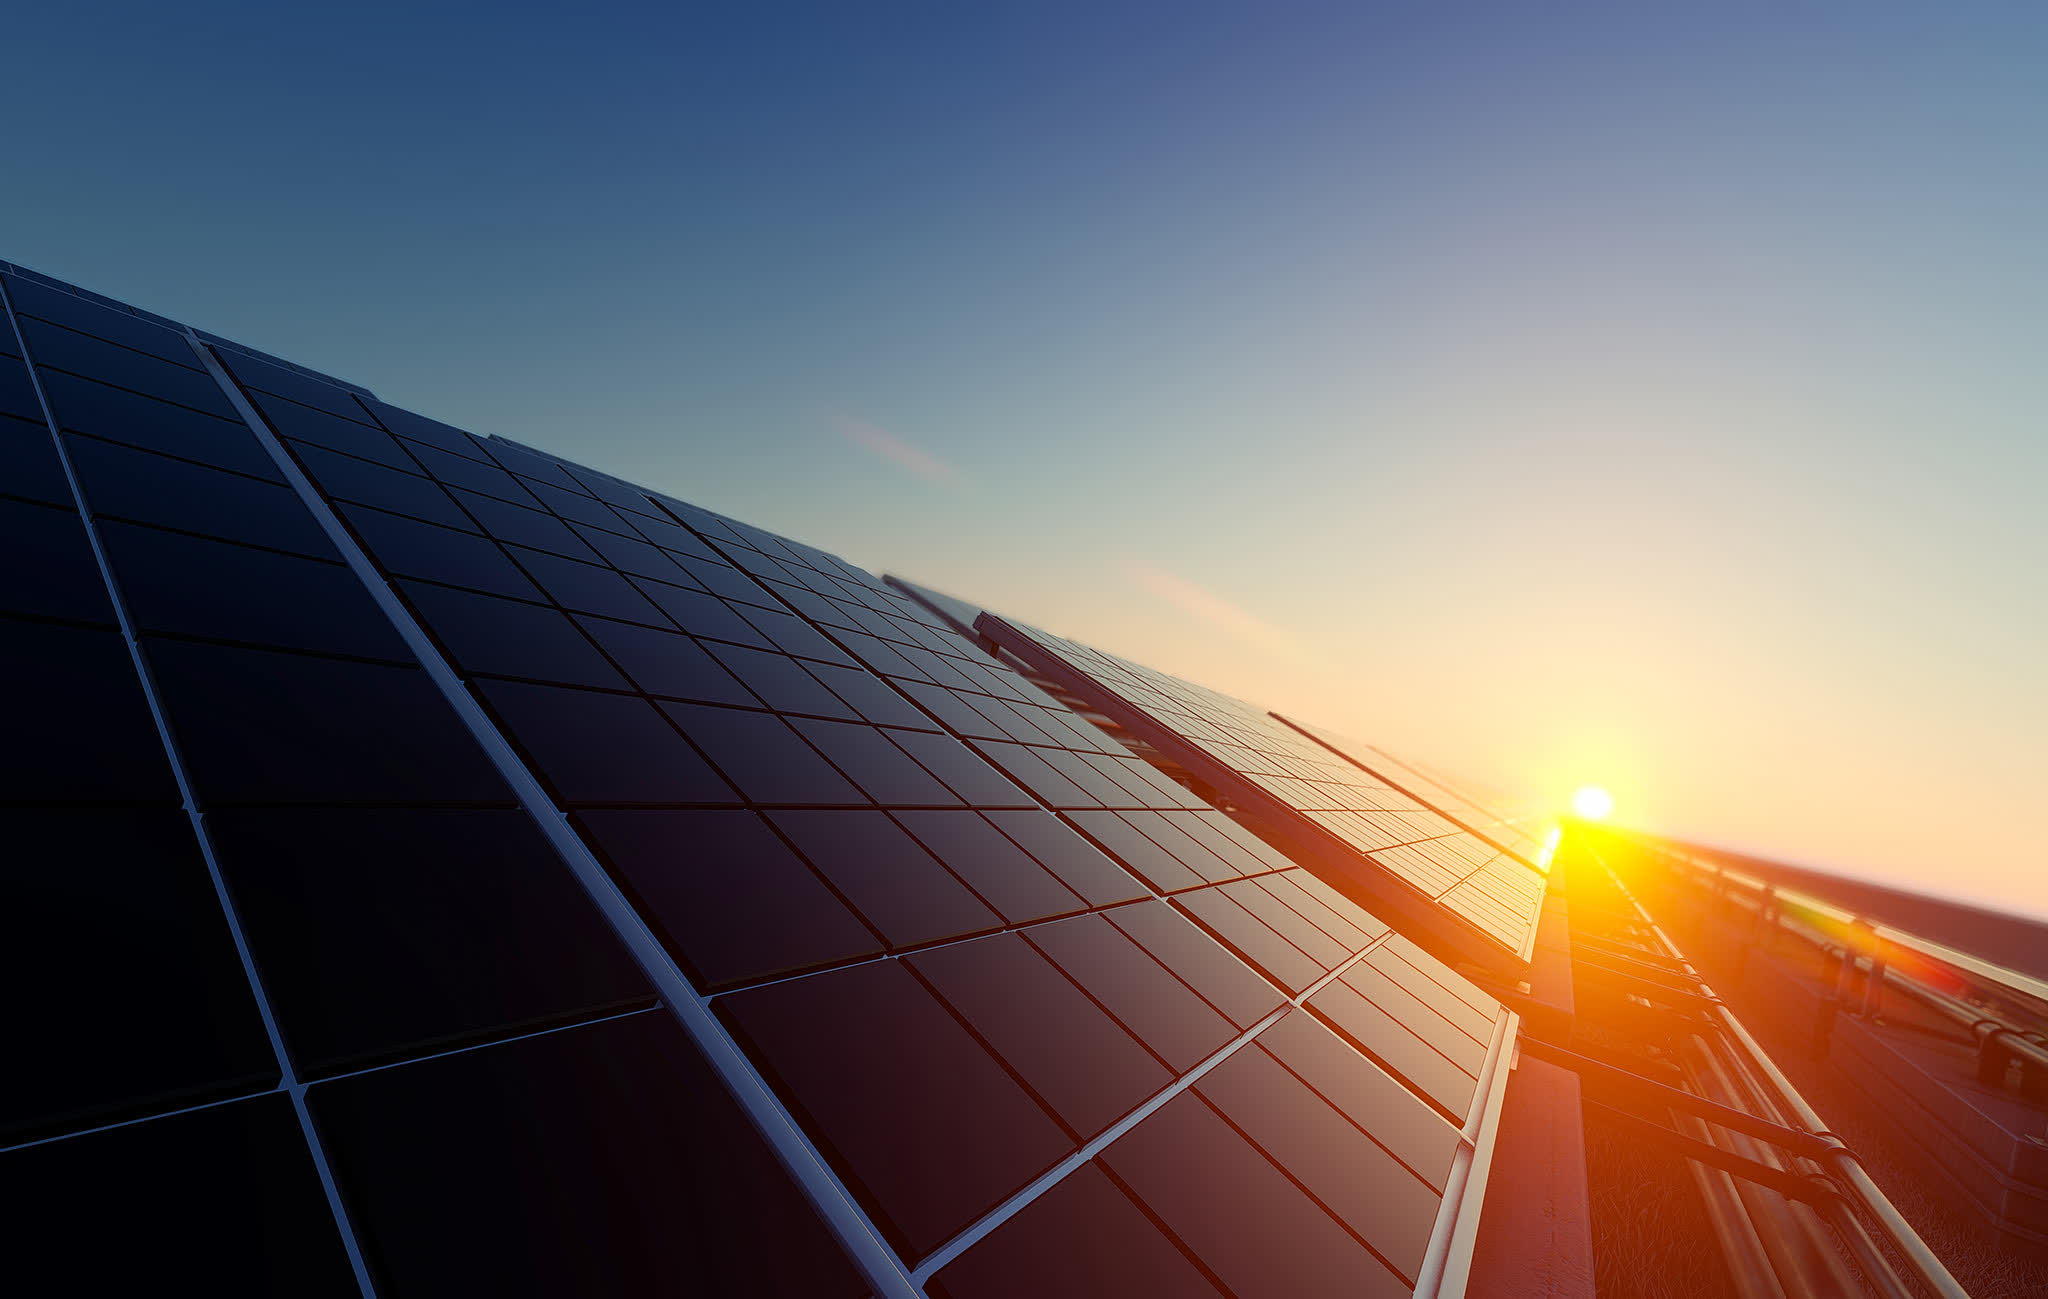 Las células solares de forma hemisférica podrían mejorar significativamente la absorción de la luz solar